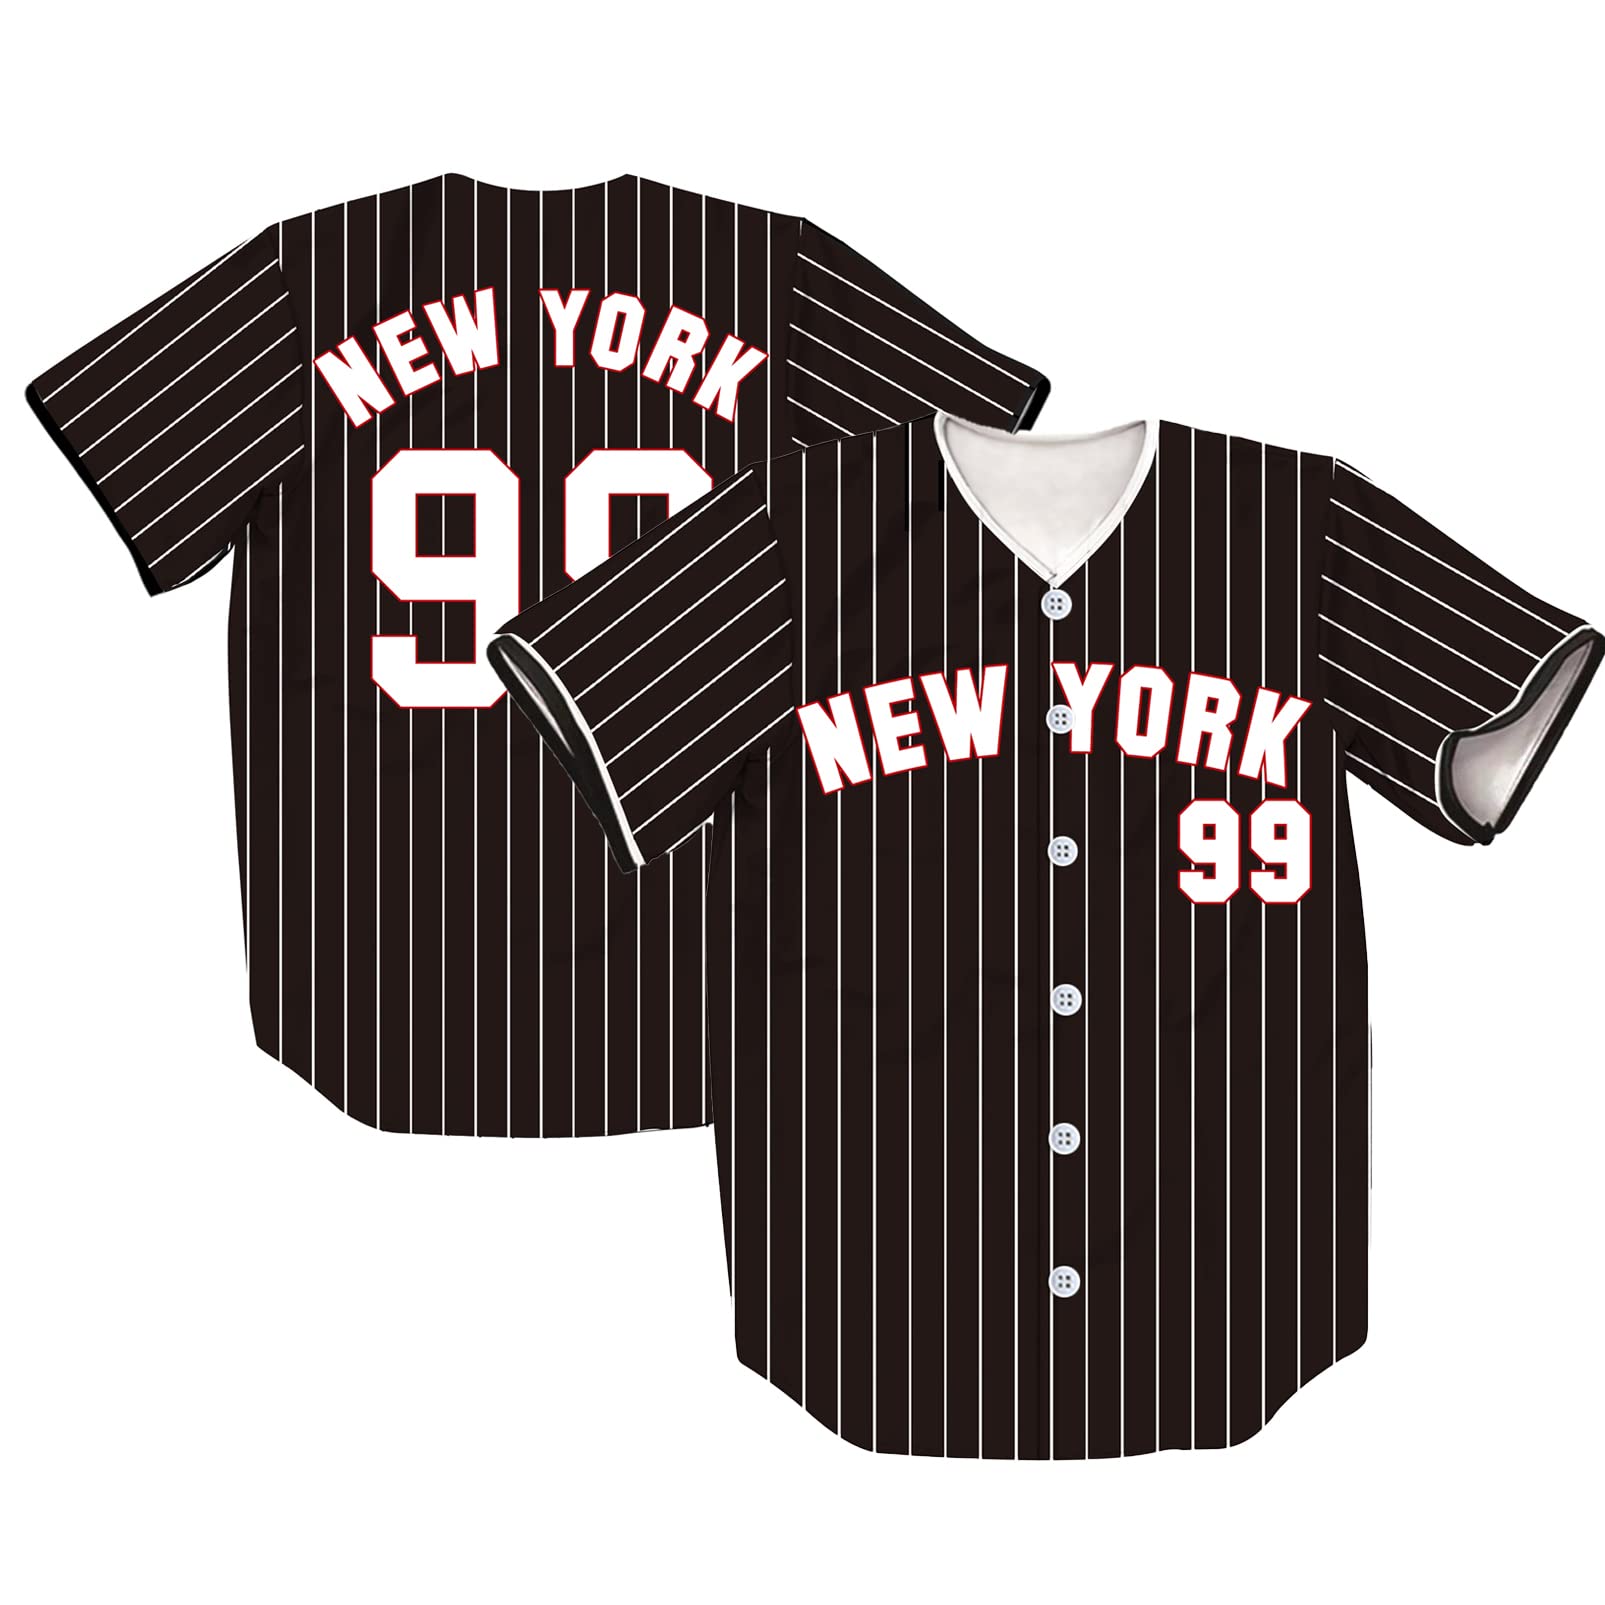  New York 99 Baseball Jerseys, Men and Women NY